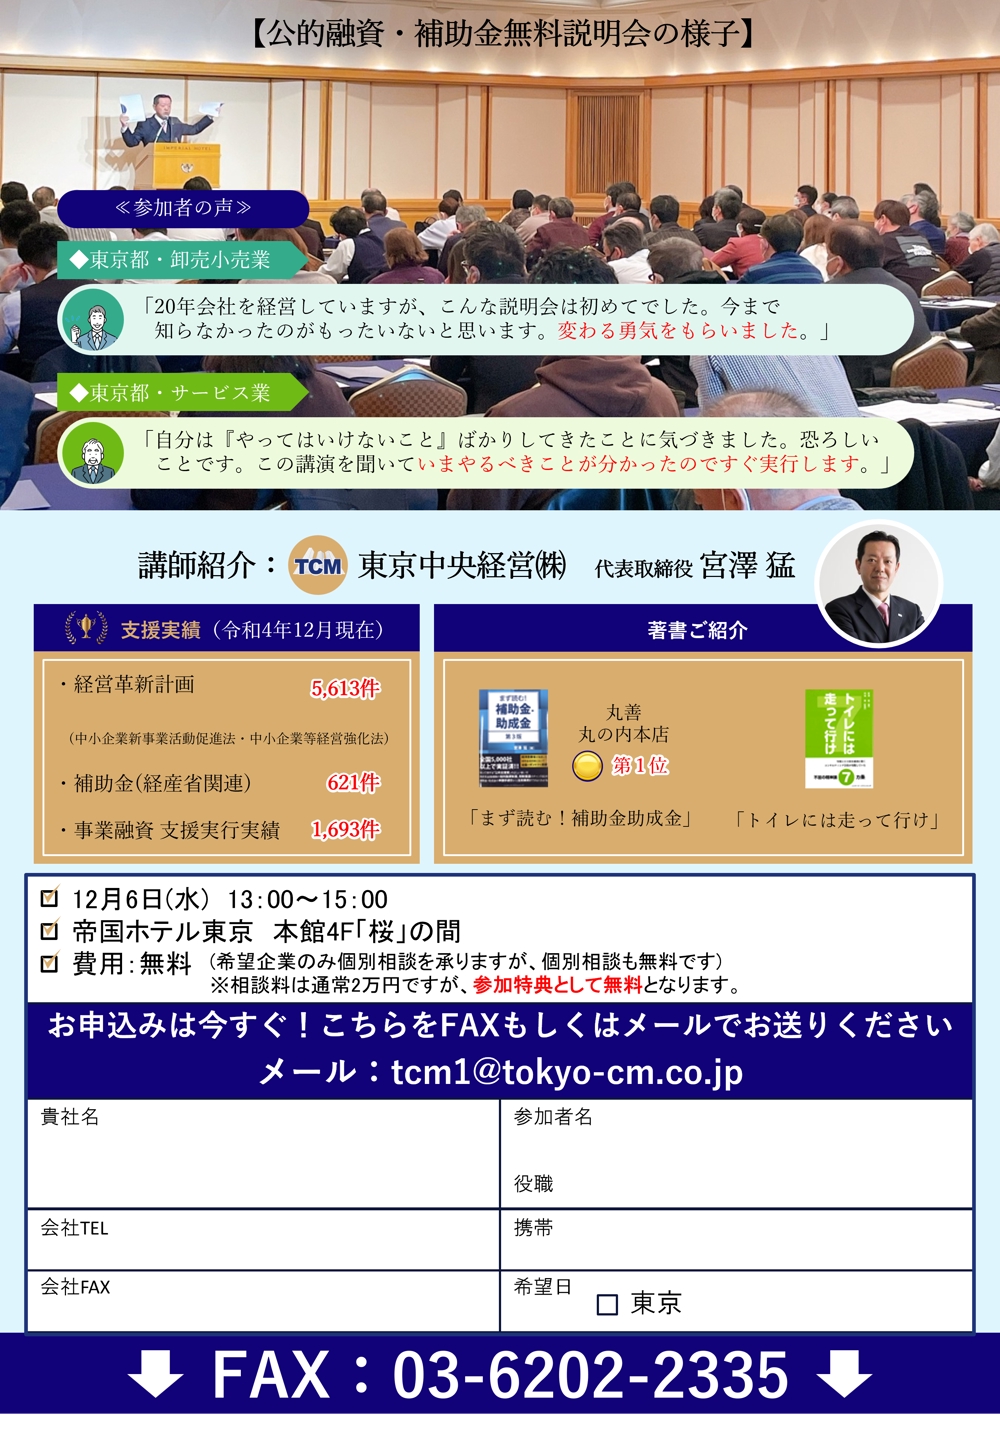 「公的融資・補助金 無料説明会」の集客チラシ(A4大判ハガキ)